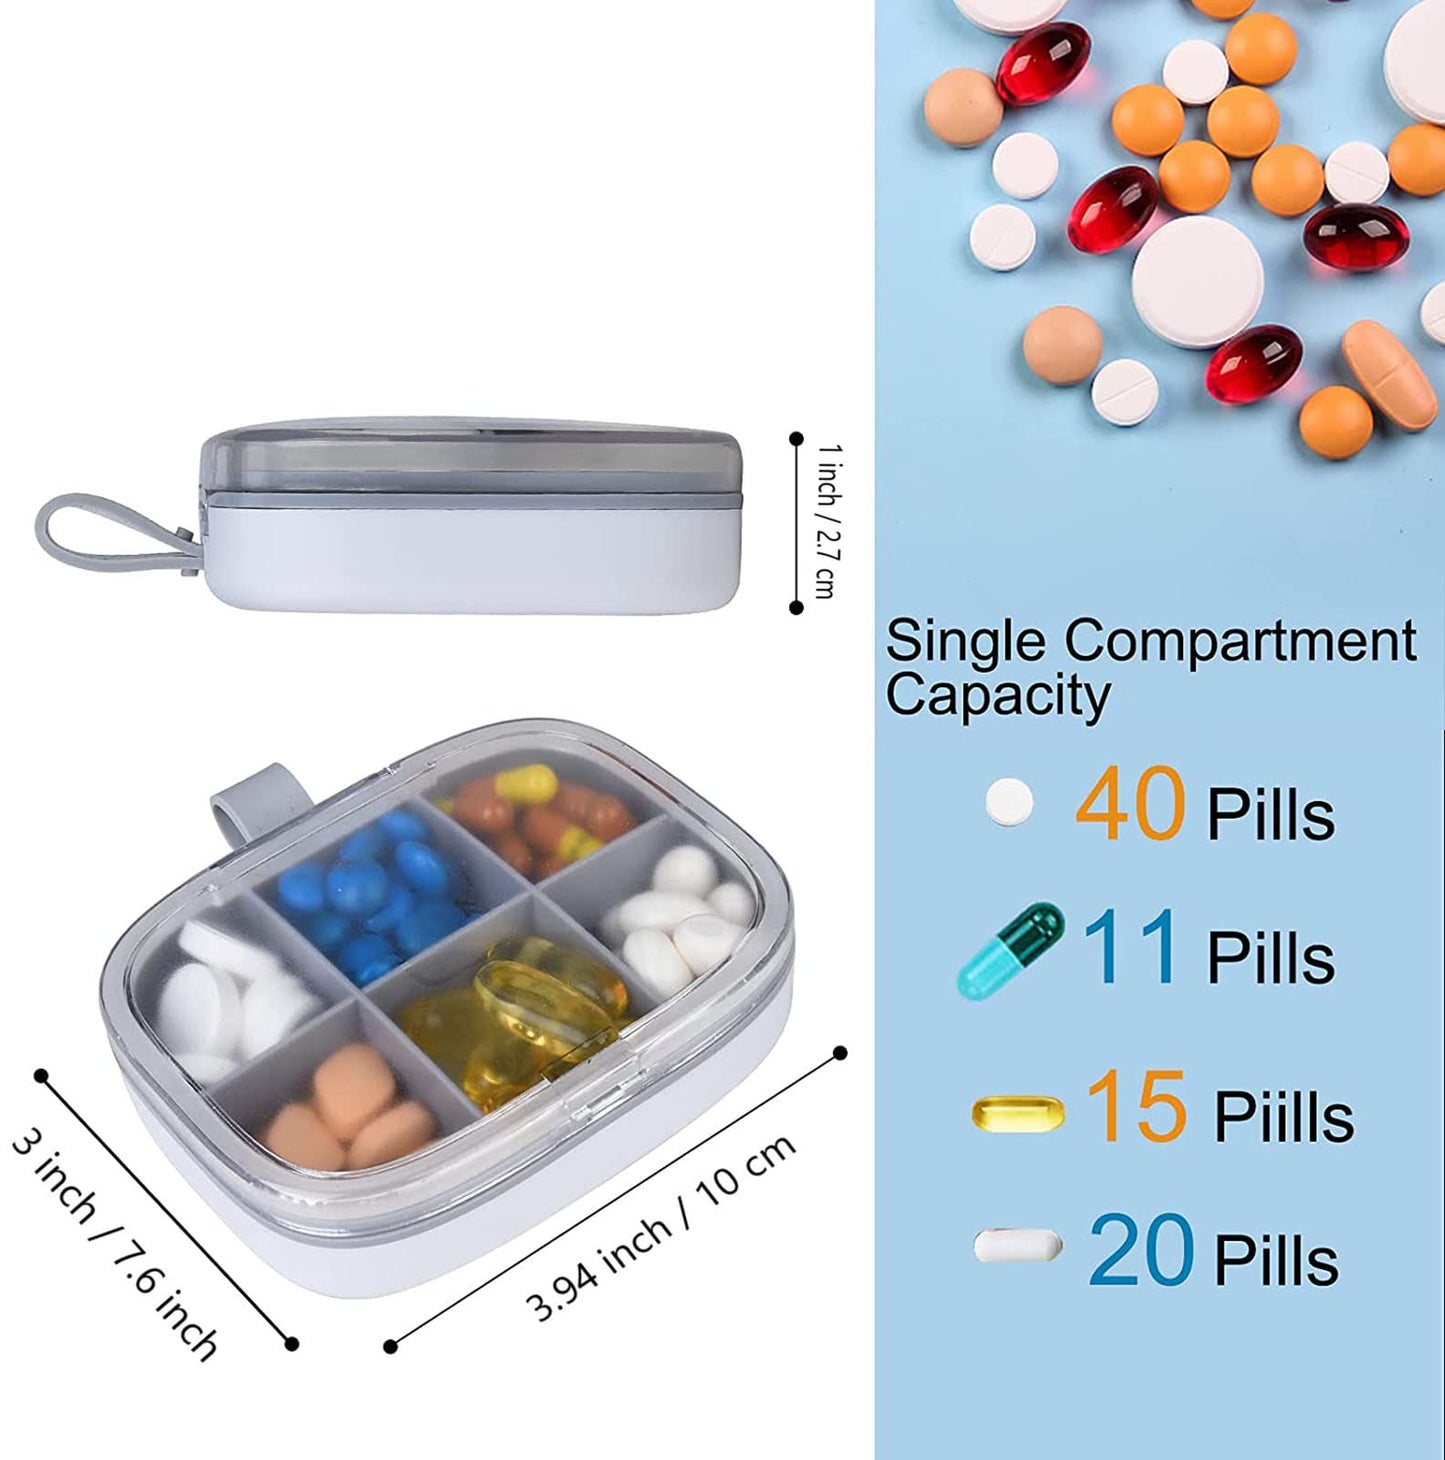 AJIADA 6 Compartments Travel Pill Organizer Box Moisture Proof Small Pill Box for Pocket Purse Daily Travel Case Portable Medicine Vitamin Container, White